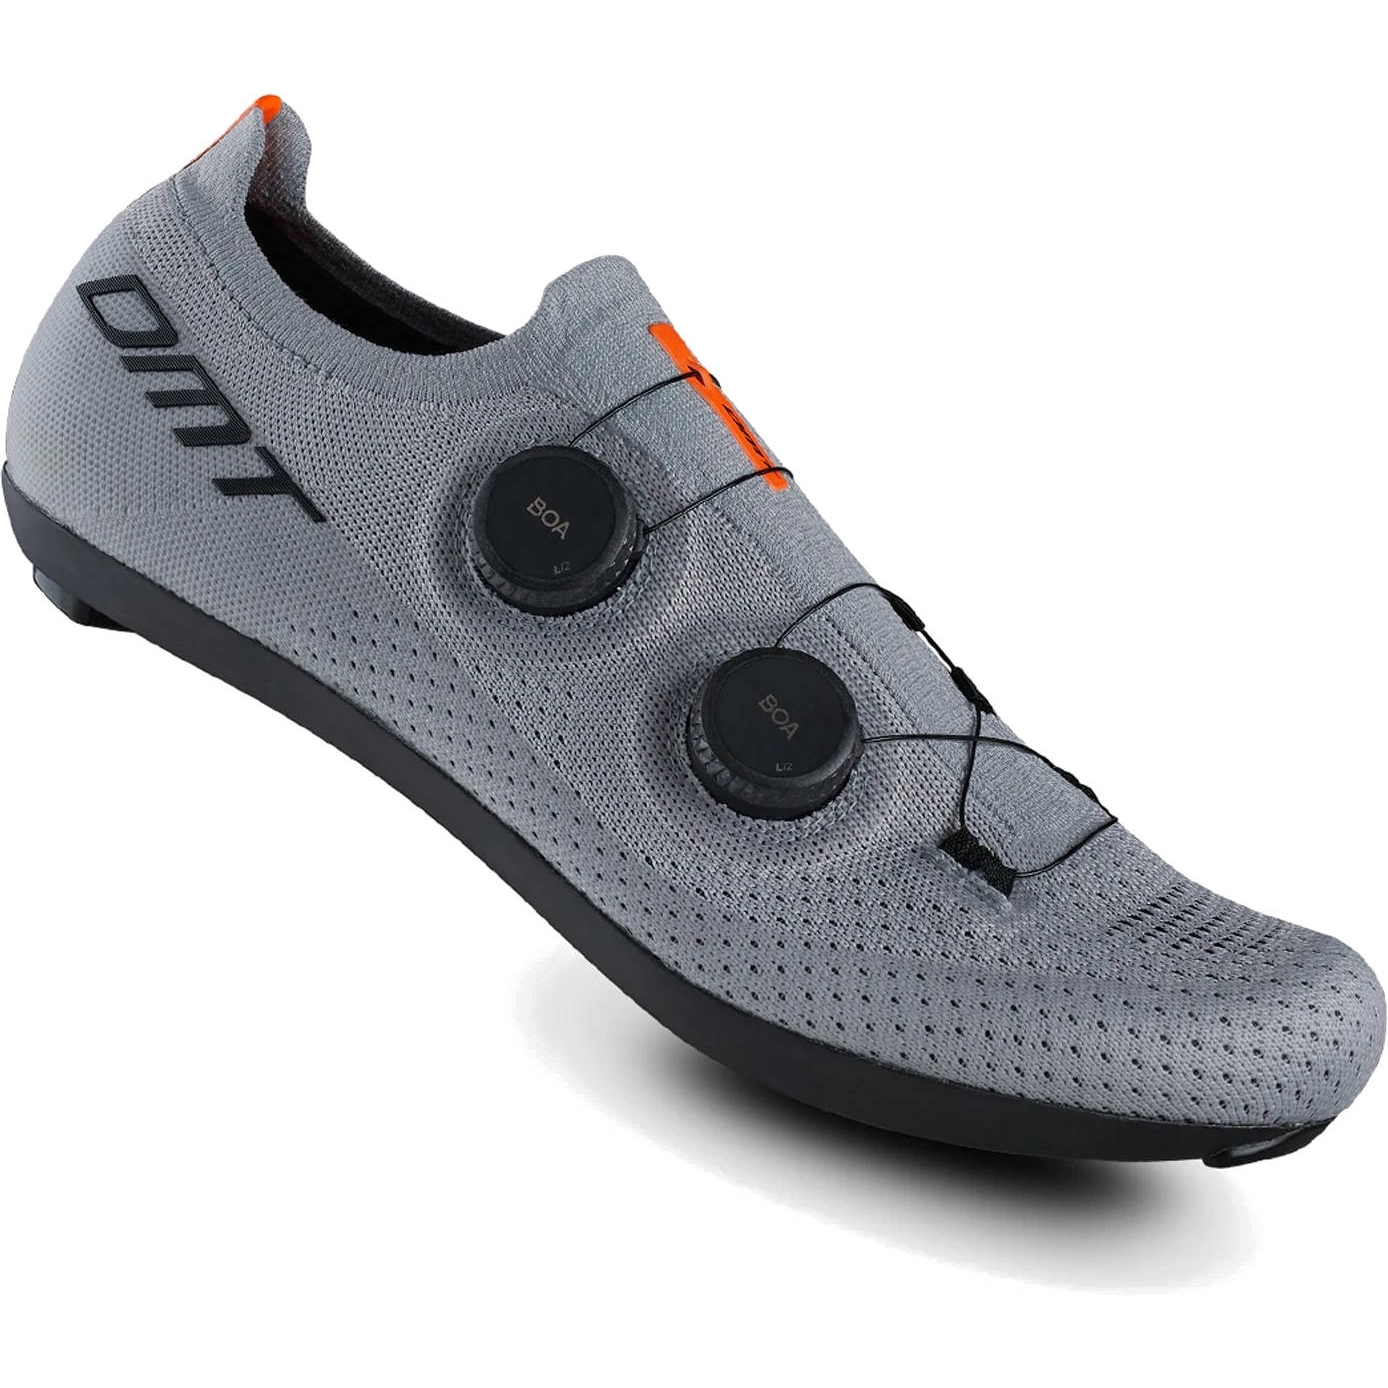 Productfoto van DMT KR0 Racefietsschoenen - grijs/grijs